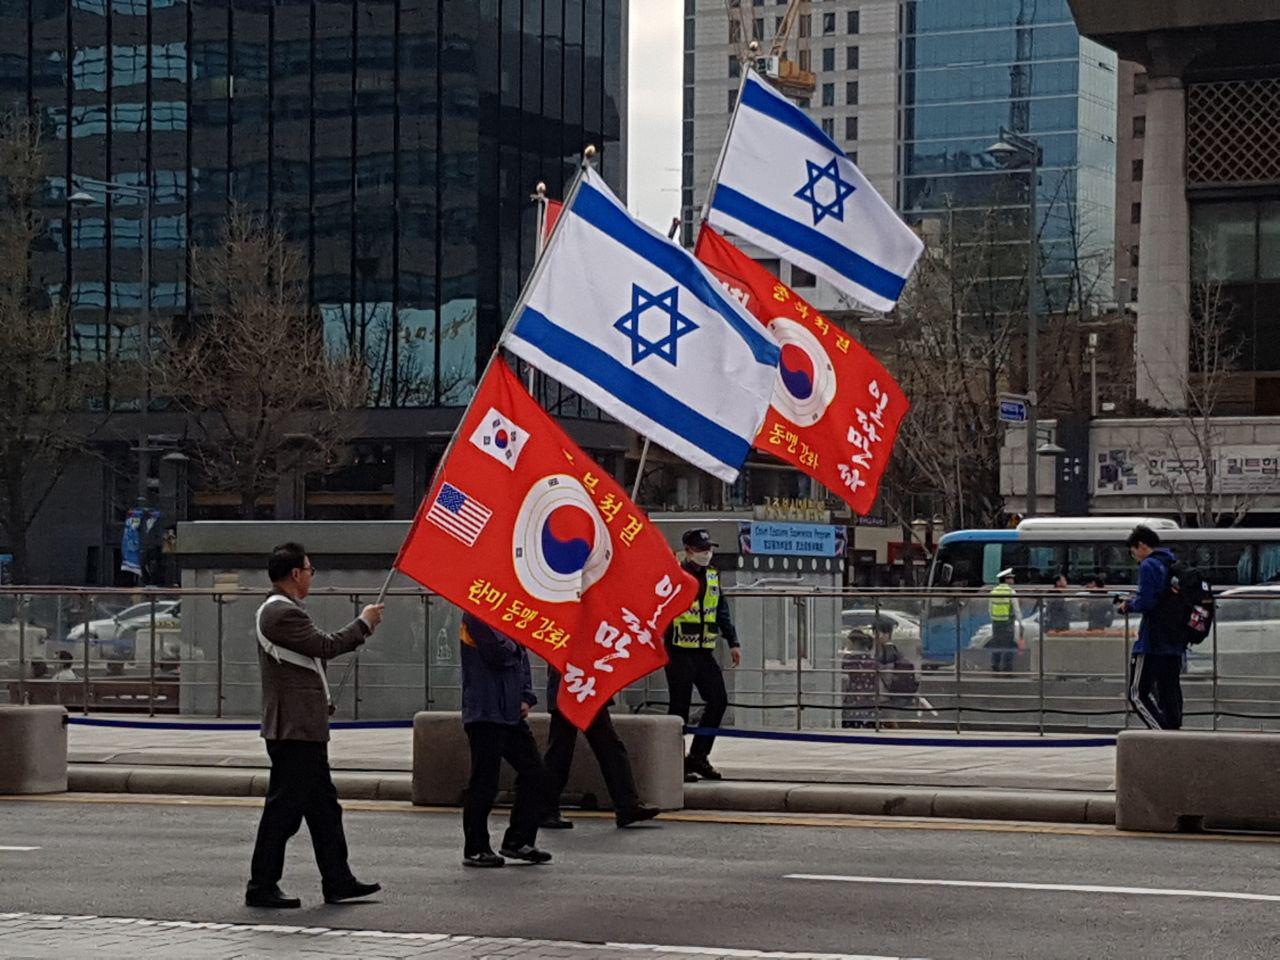 2018년 4월, 집회 참가자들이 태극기와 성조기 그리고 이스라엘 국기가 그려진 깃발을 들고 행진하고 있다. 